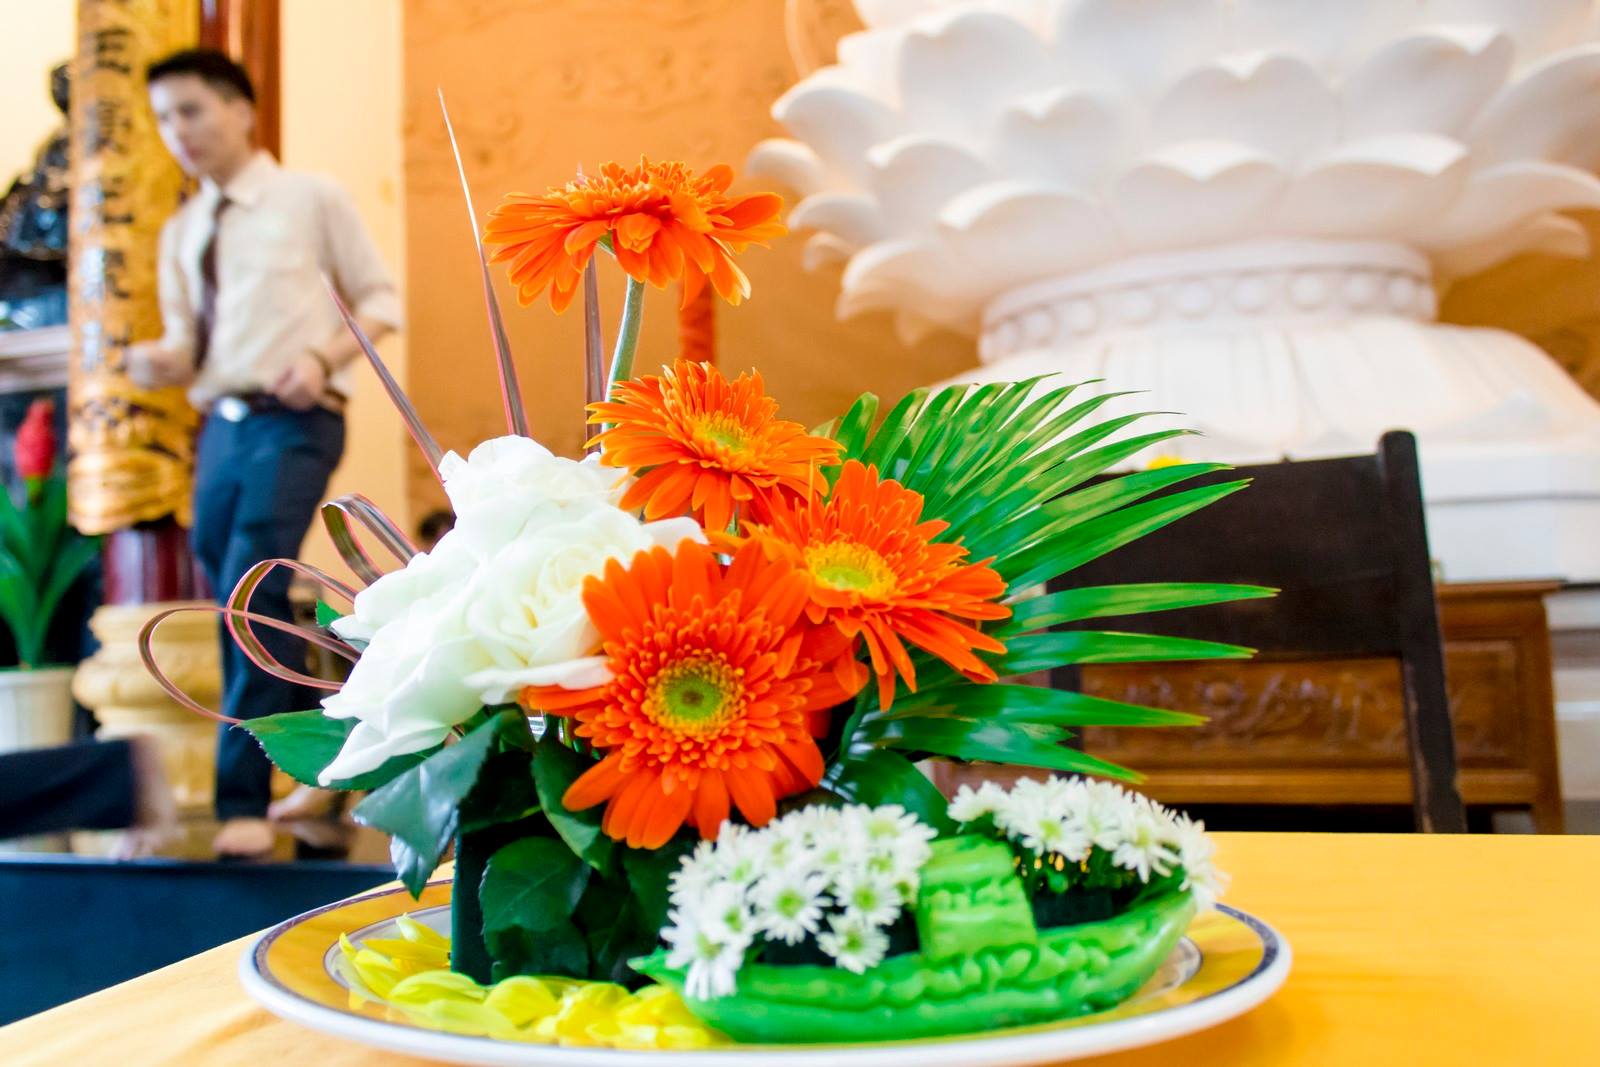 Từ sáng sớm, các bạn đã đến chùa để chuẩn bị những đóa hoa tươi thắm này dành trang trí trên bàn Sư Phụ.